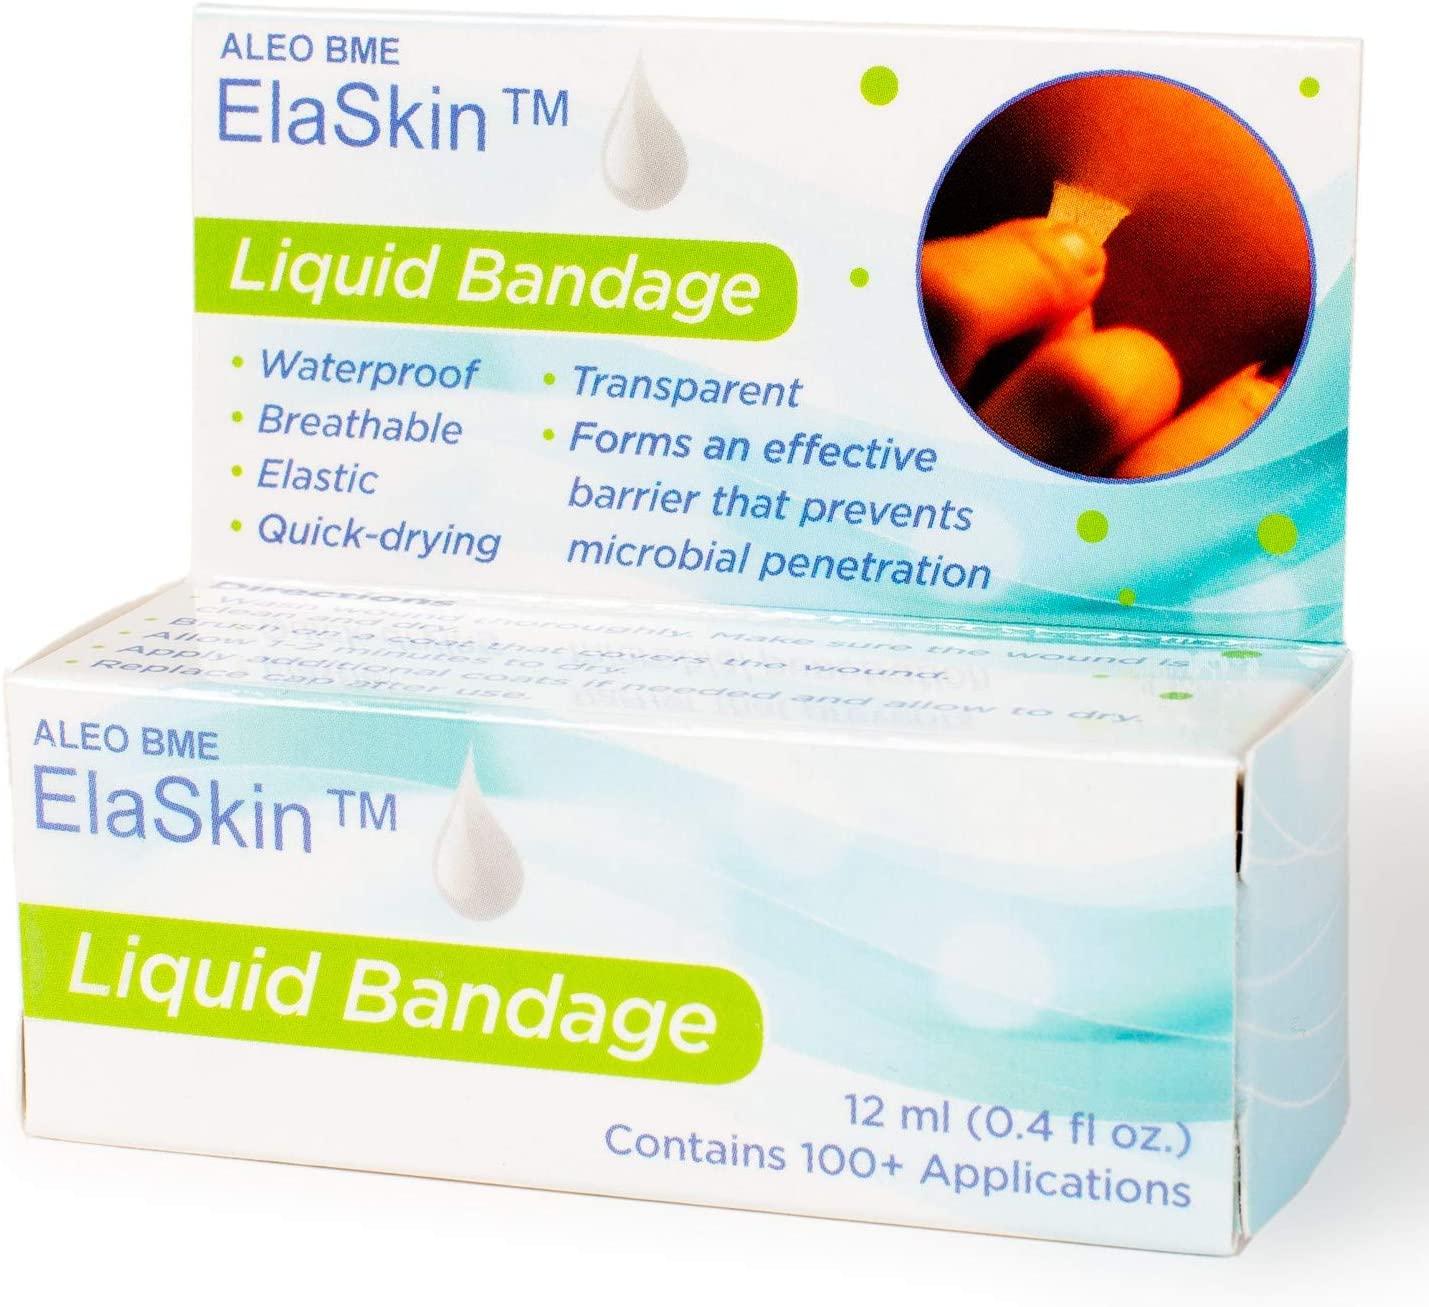 ElaSkin Liquid Bandage - ElaSkin